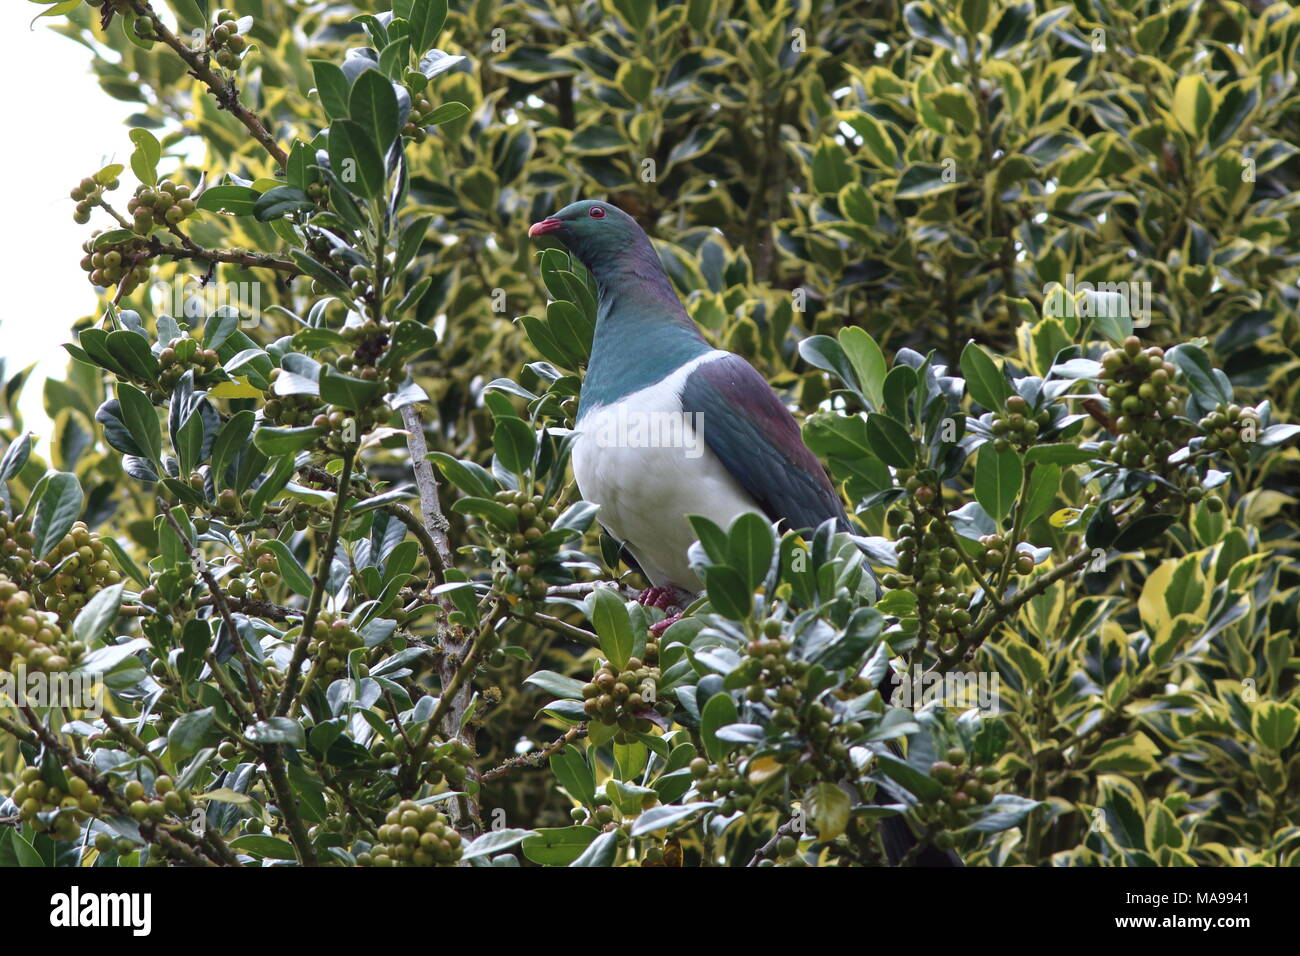 Hemiphaga novaeseelandiae, NZ un pigeon ramier pigeon fruits forestiers, un oiseau endémique connu par les gens comme une kokopa, ici dans un arbre aux fruits rouges Banque D'Images